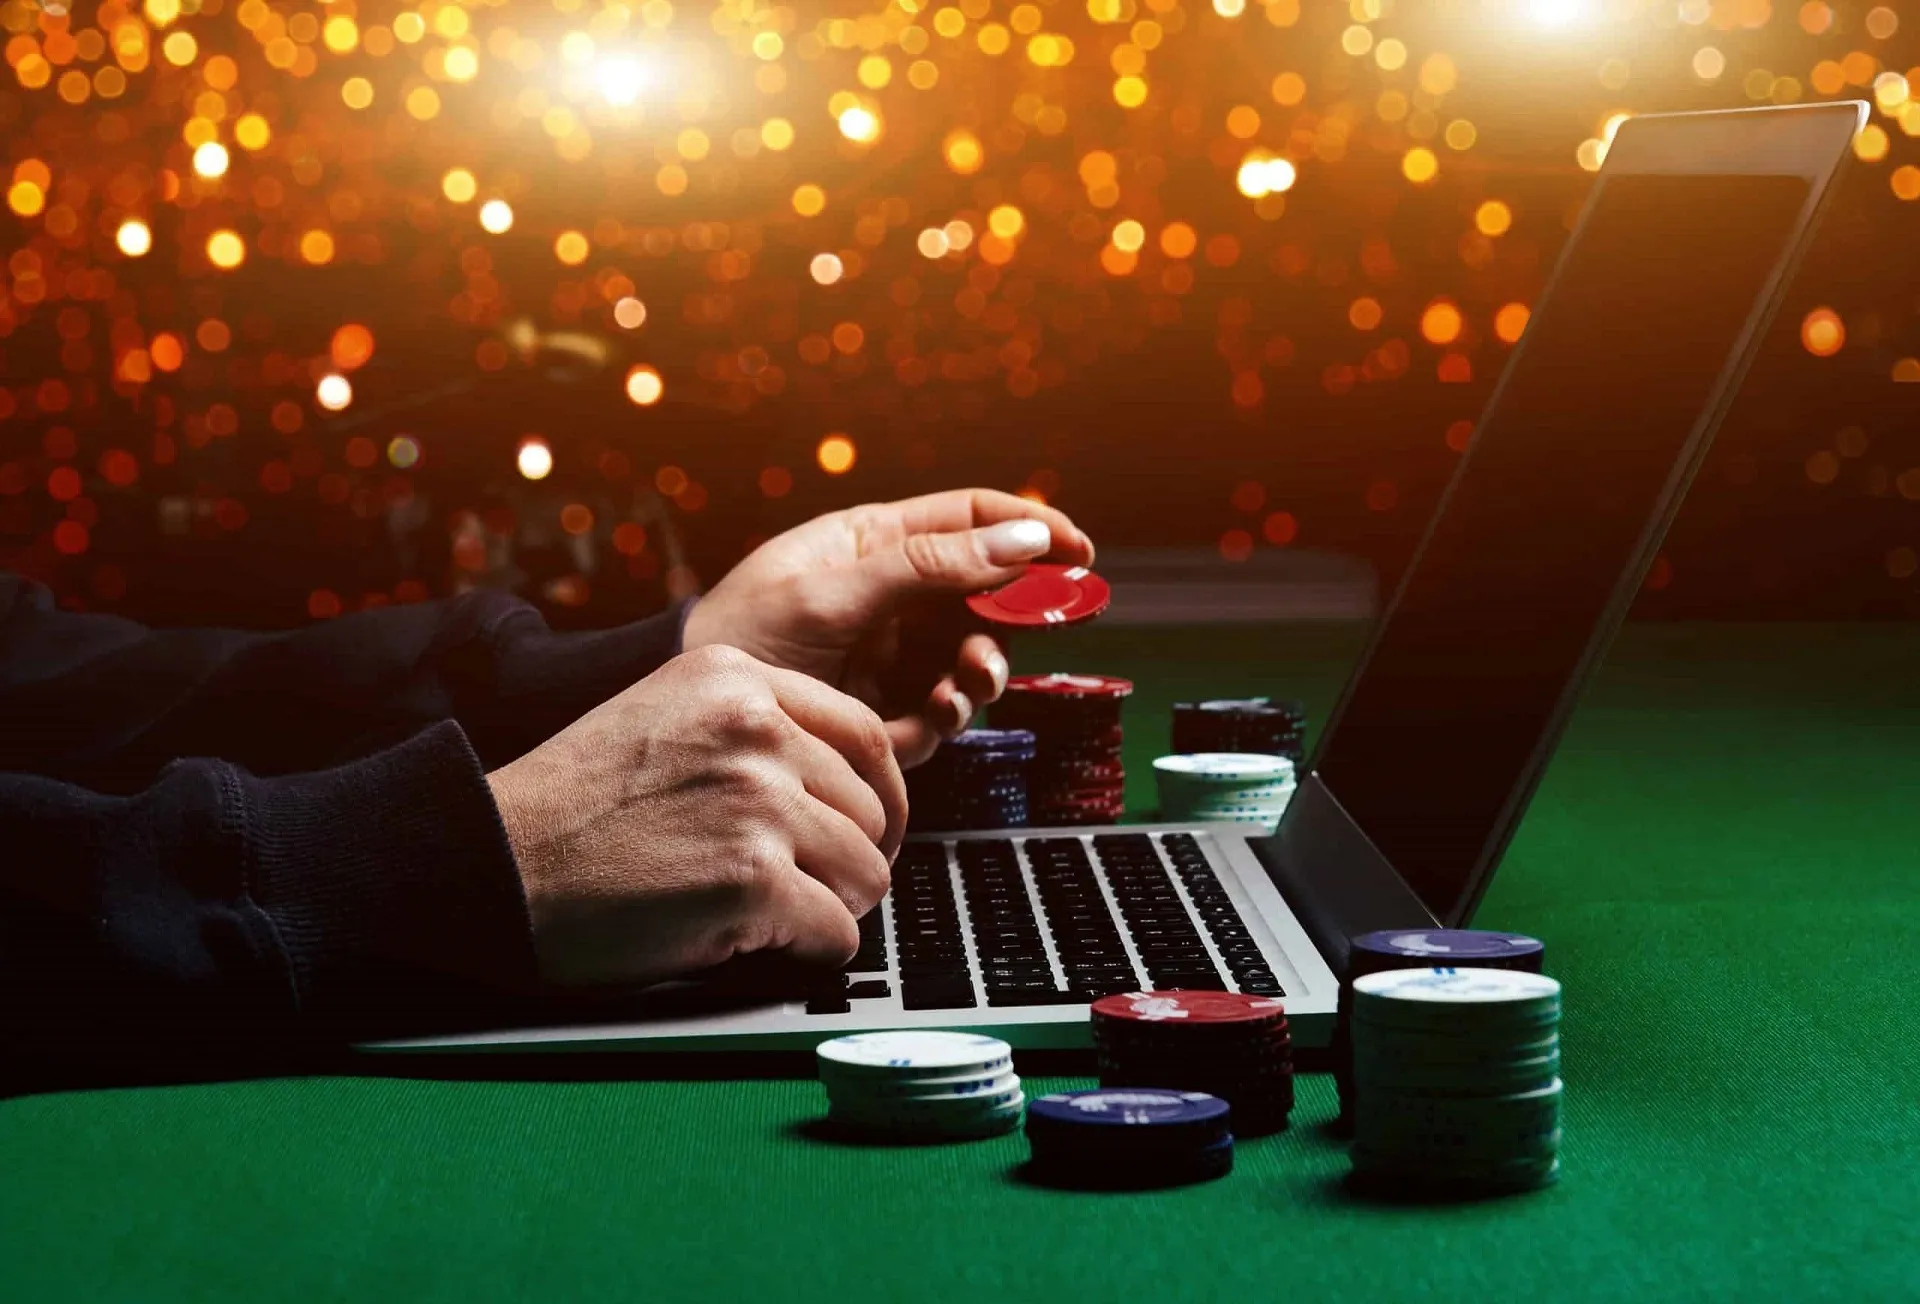 Online Gambling in Malaysia